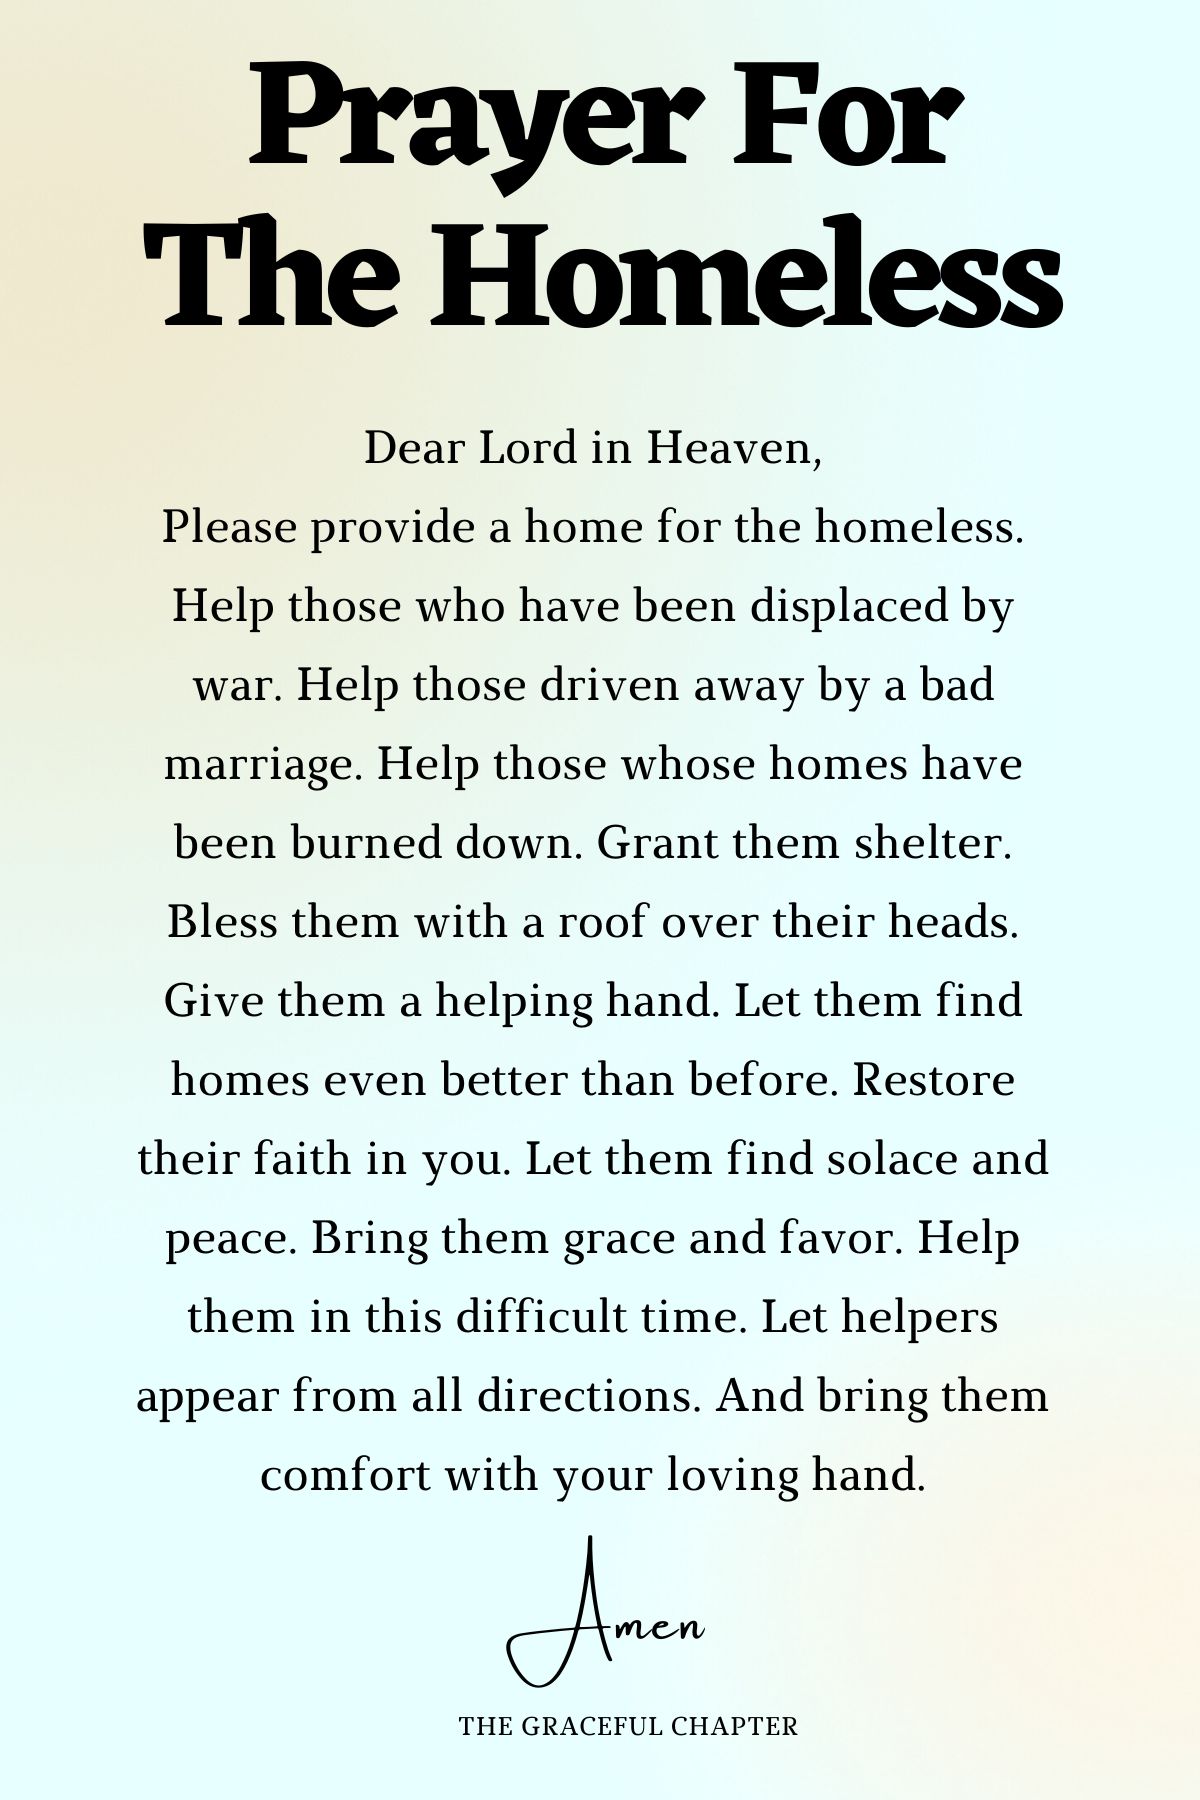 Prayer for the homeless - Prayers For The Needy